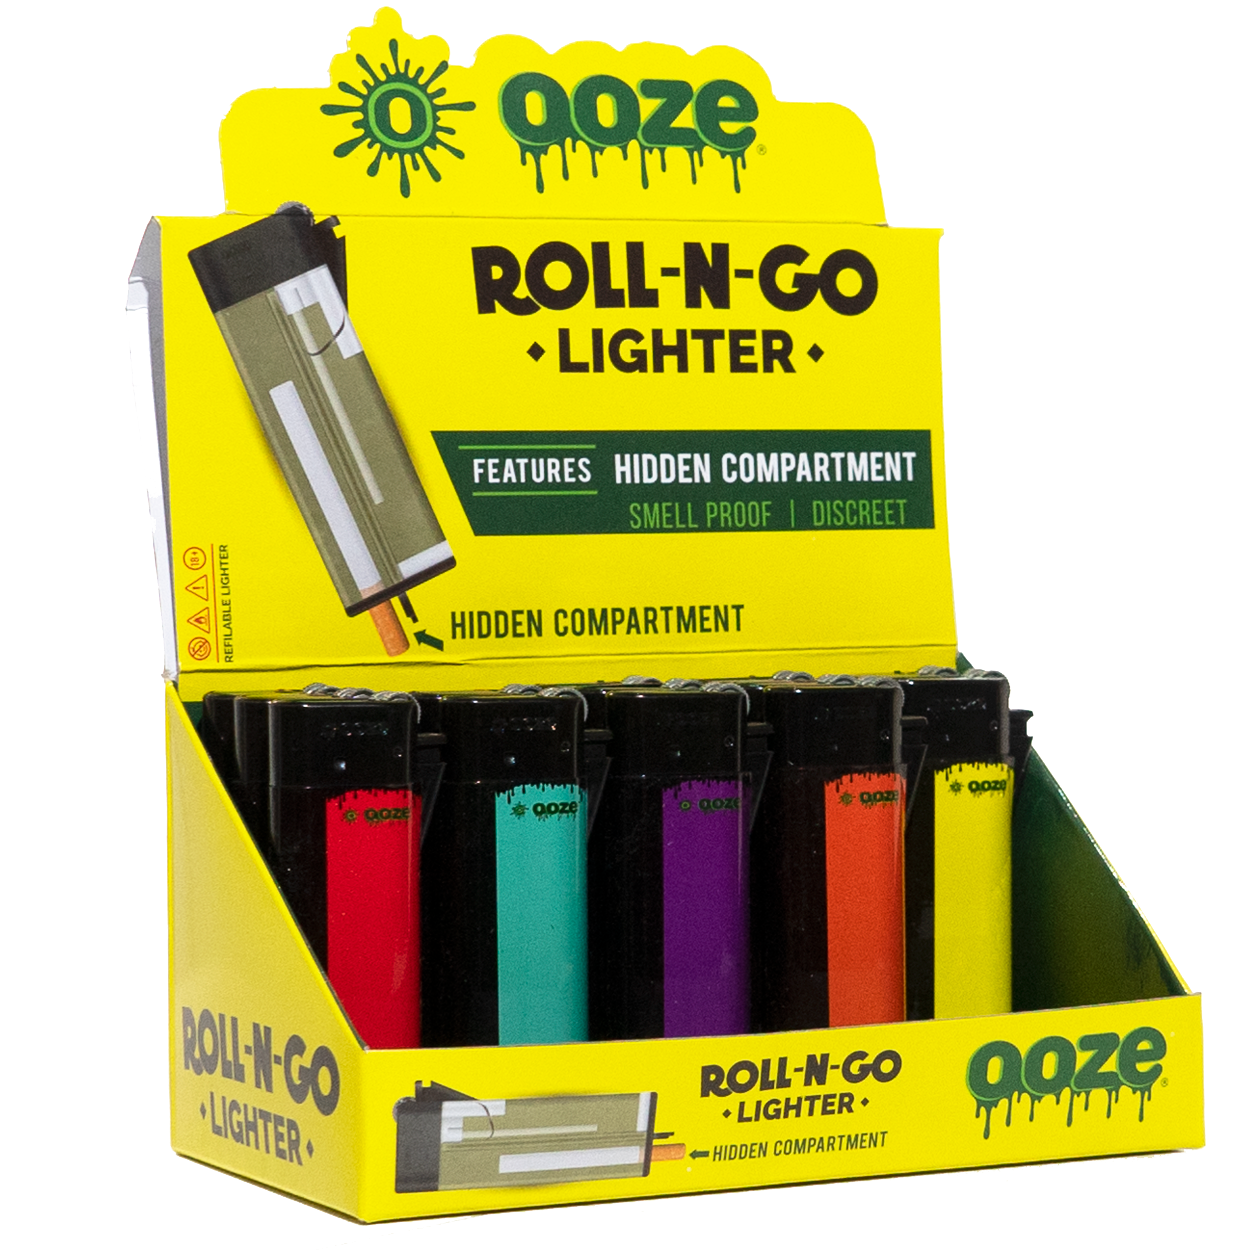 Ooze - Roll N' Go Lighter - MI VAPE CO 